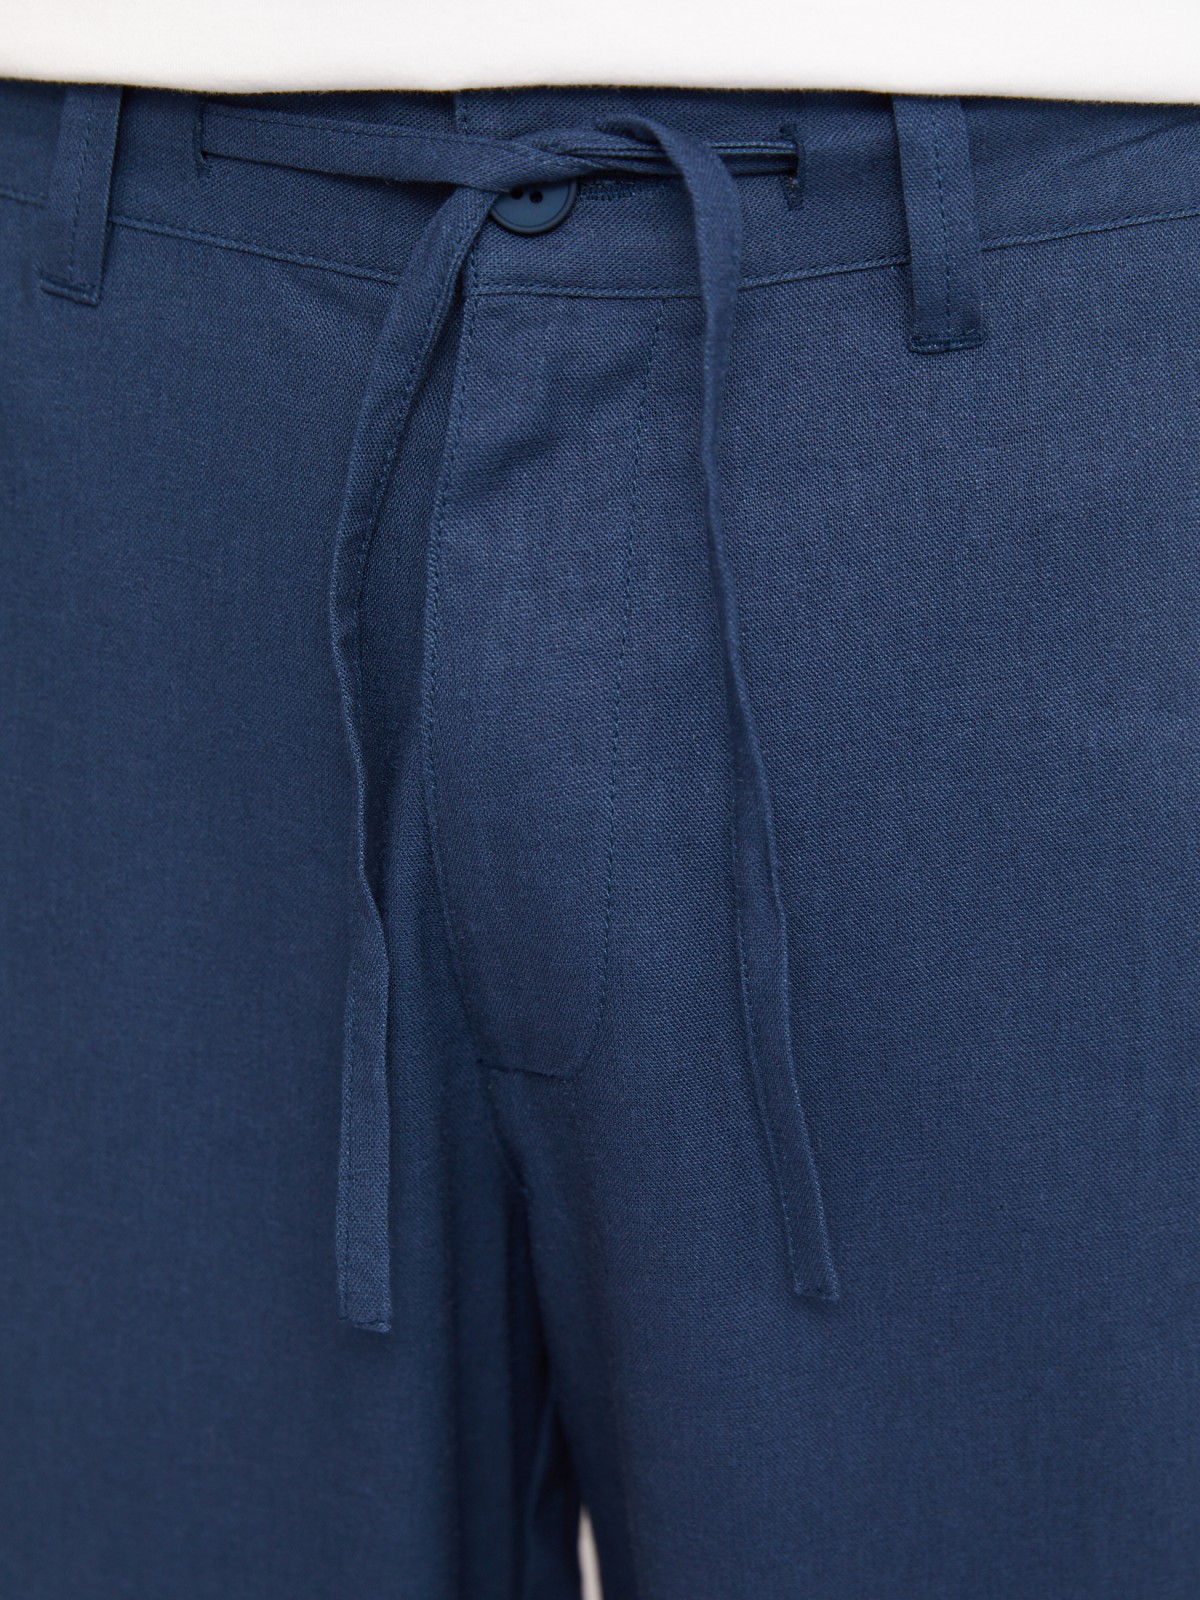 Льняные брюки прямого фасона с кулиской zolla N1424730L013, цвет голубой, размер 32 - фото 3